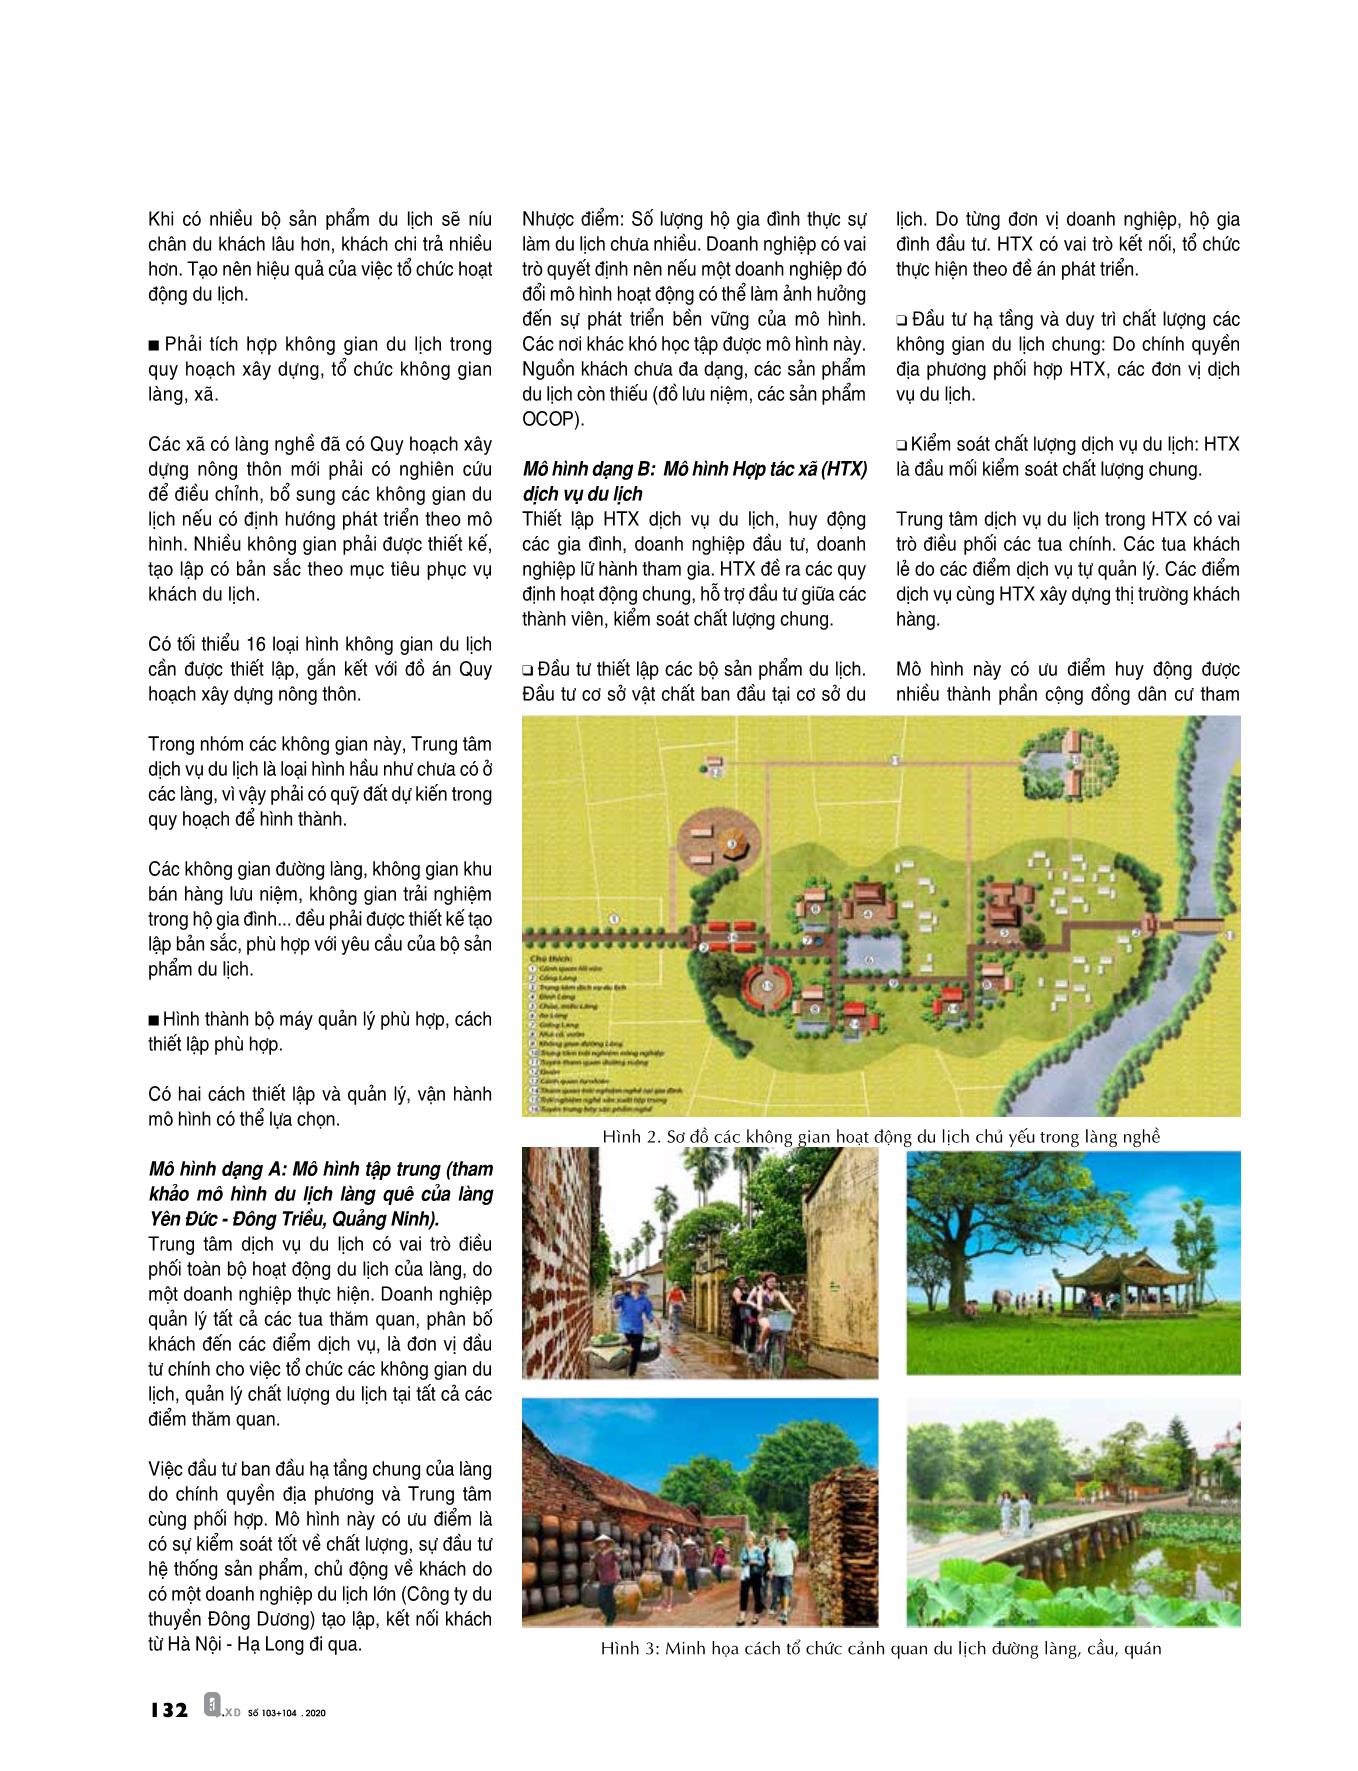 Cách tiếp cận mới trong việc xây dựng mô hình làng nghề - Du lịch trong các làng nghề truyền thống khu vực Đồng bằng sông Hồng trang 5